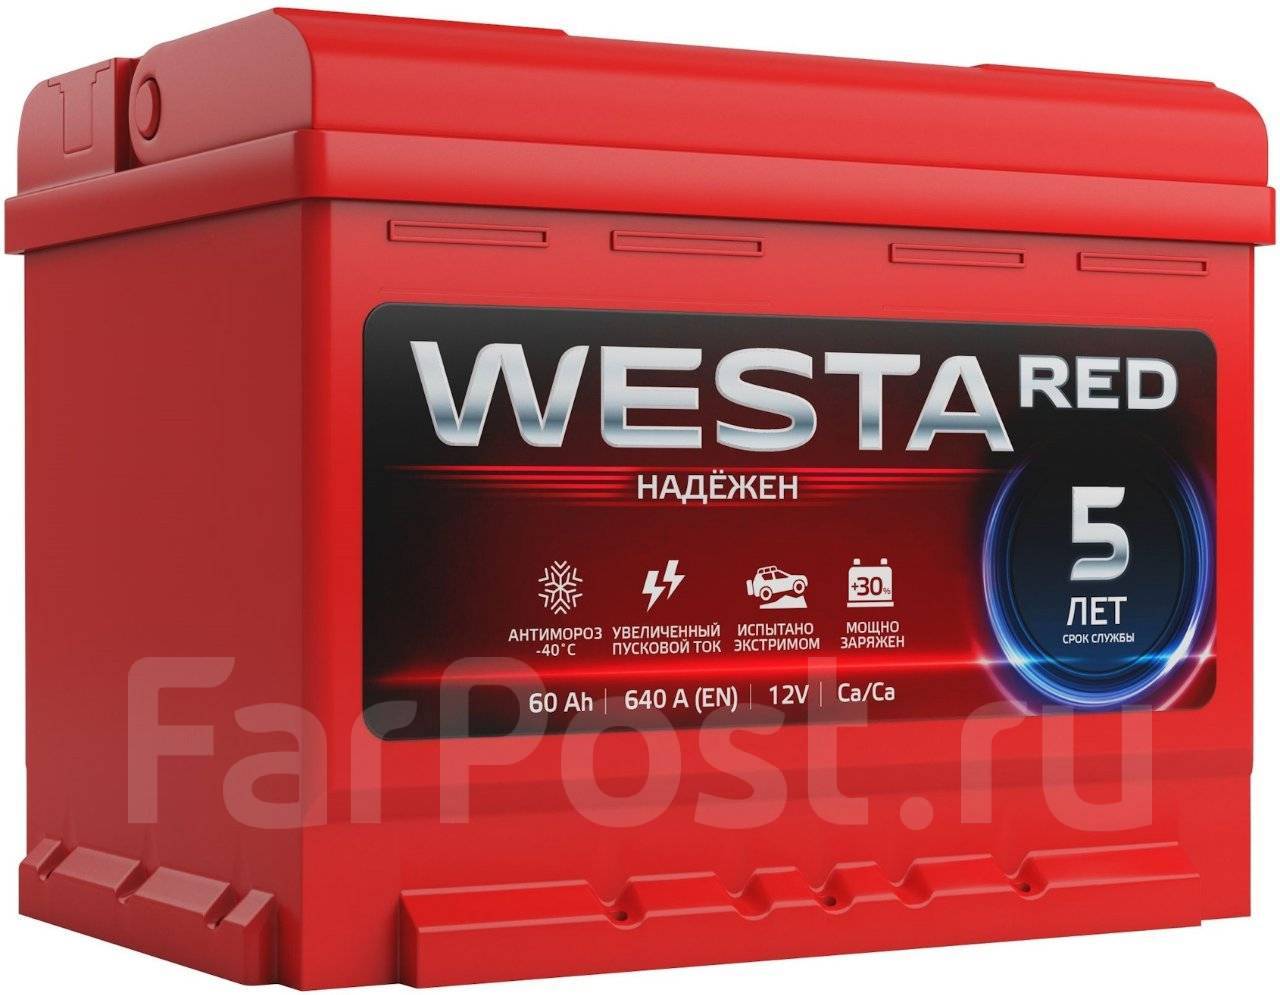 Аккумулятор автомобильный 60а. Аккумулятор Westa Red 60 Ач 640 а. Аккумулятор Westa Red 60 Ач 600. Аккумулятор Westa Red 100. АКБ Westa - 60 Red /640а/ EFB.